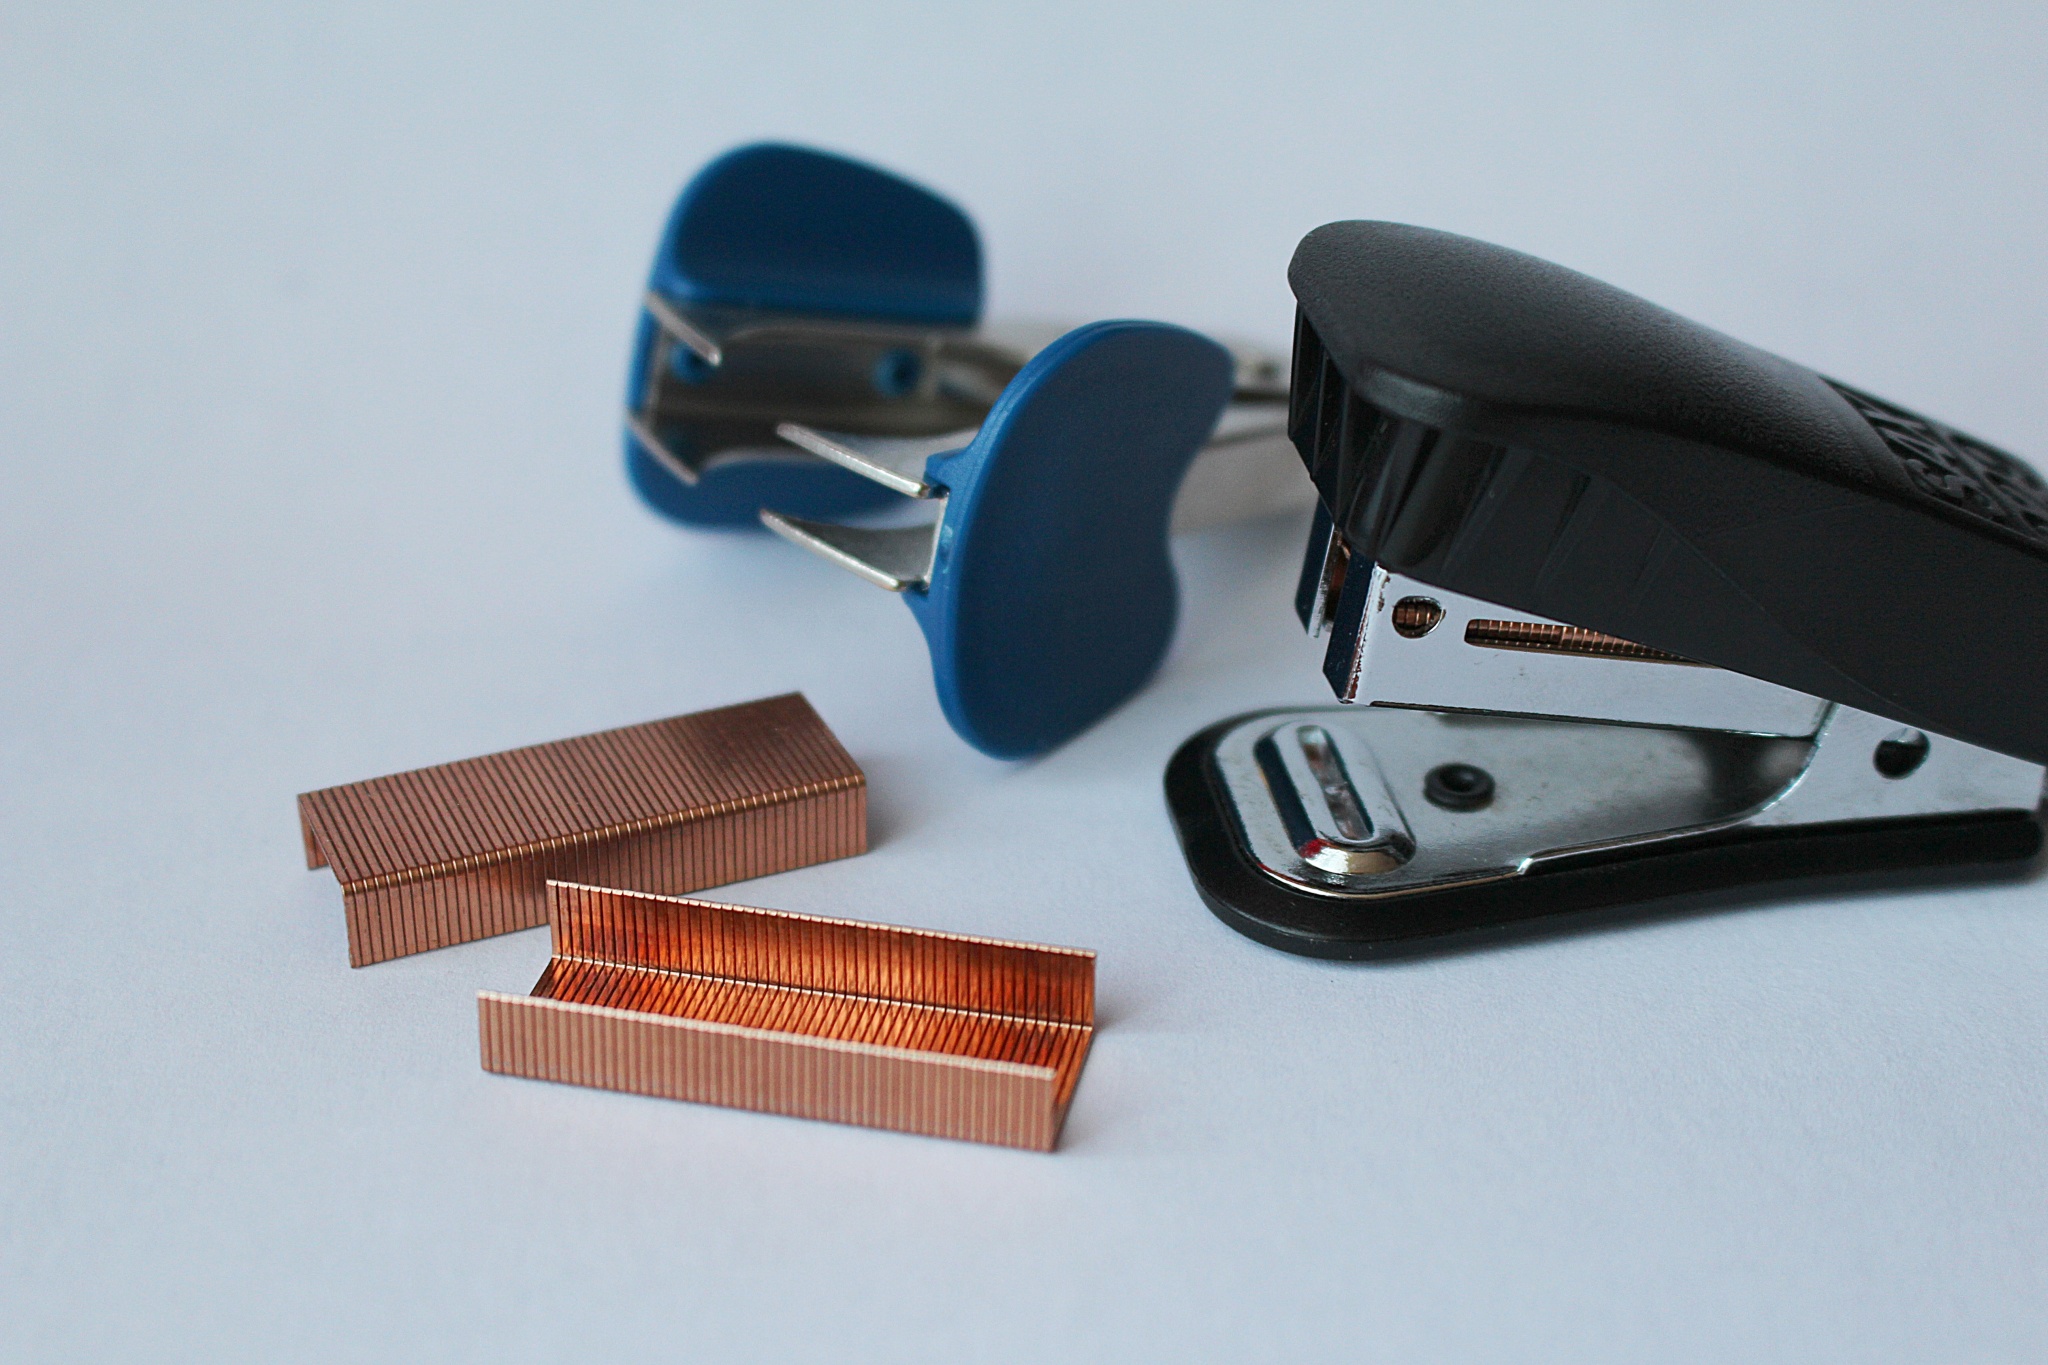 product-glasses-staples-stapler-fashion-accessory-staple-remover-907007-pxhere.com.jpg